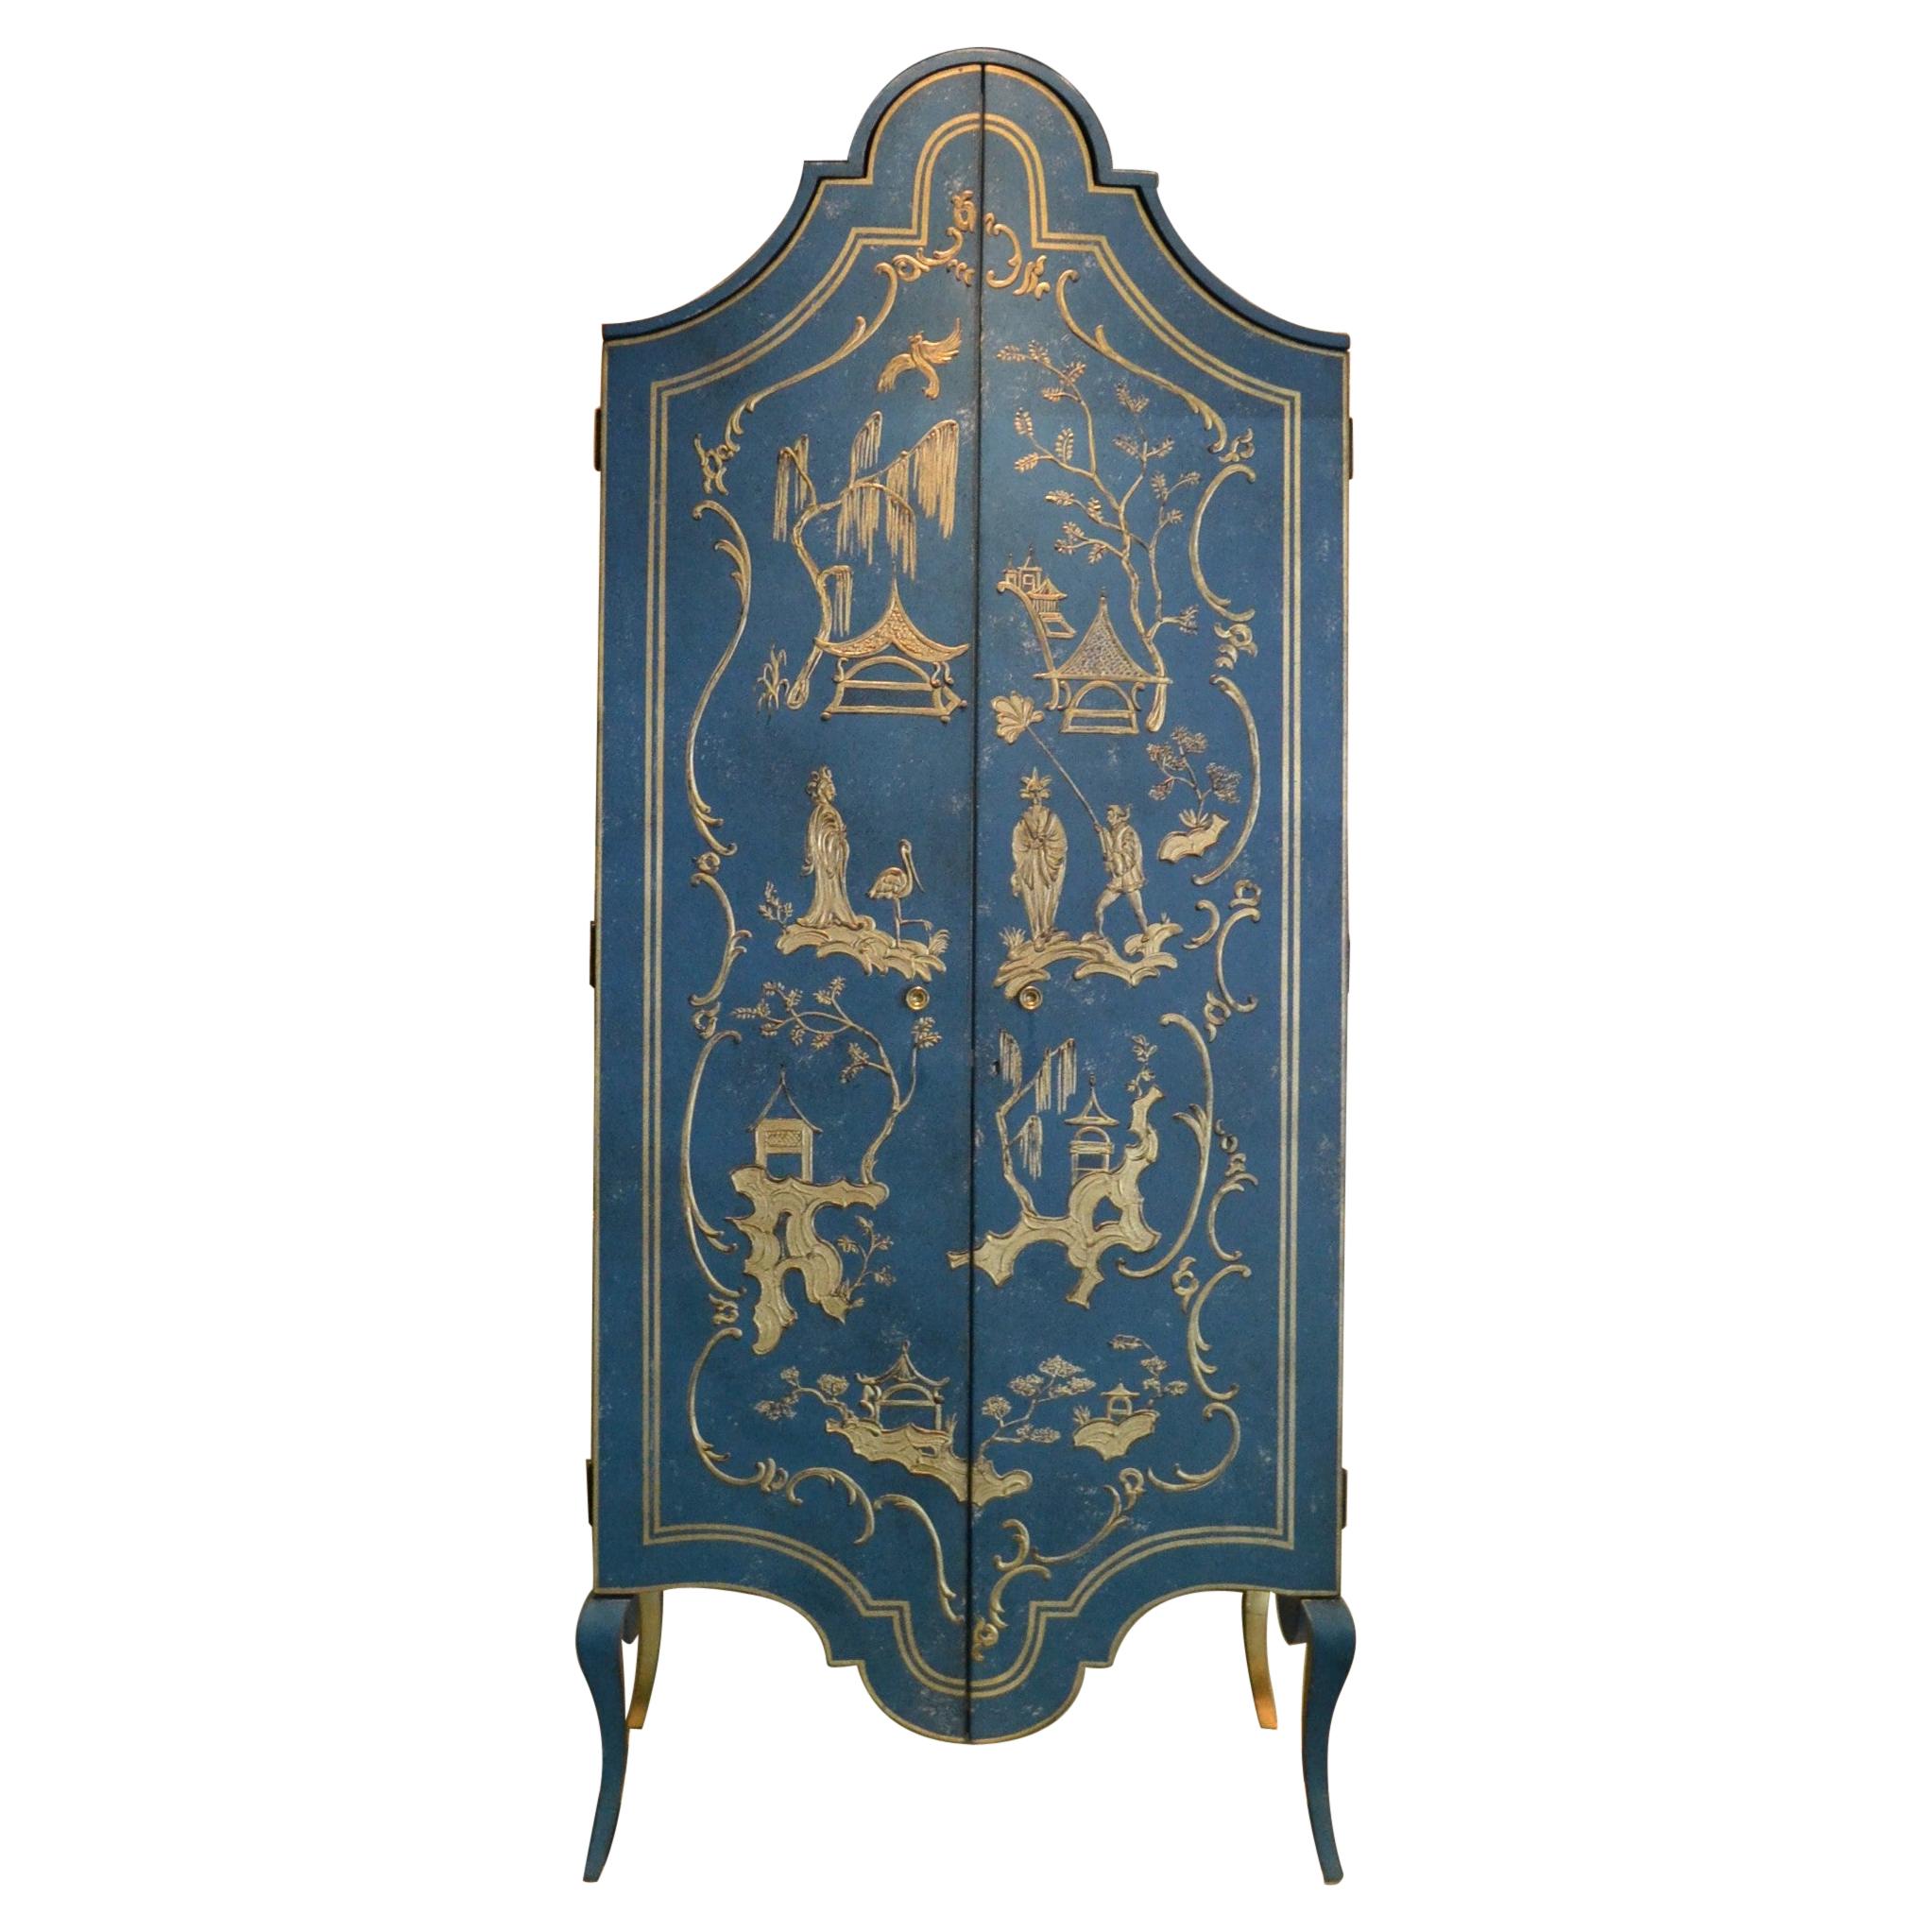 Armoire Tevere de style vénitien du 18ème siècle peinte à la main, bleu foncé et chinoiserie